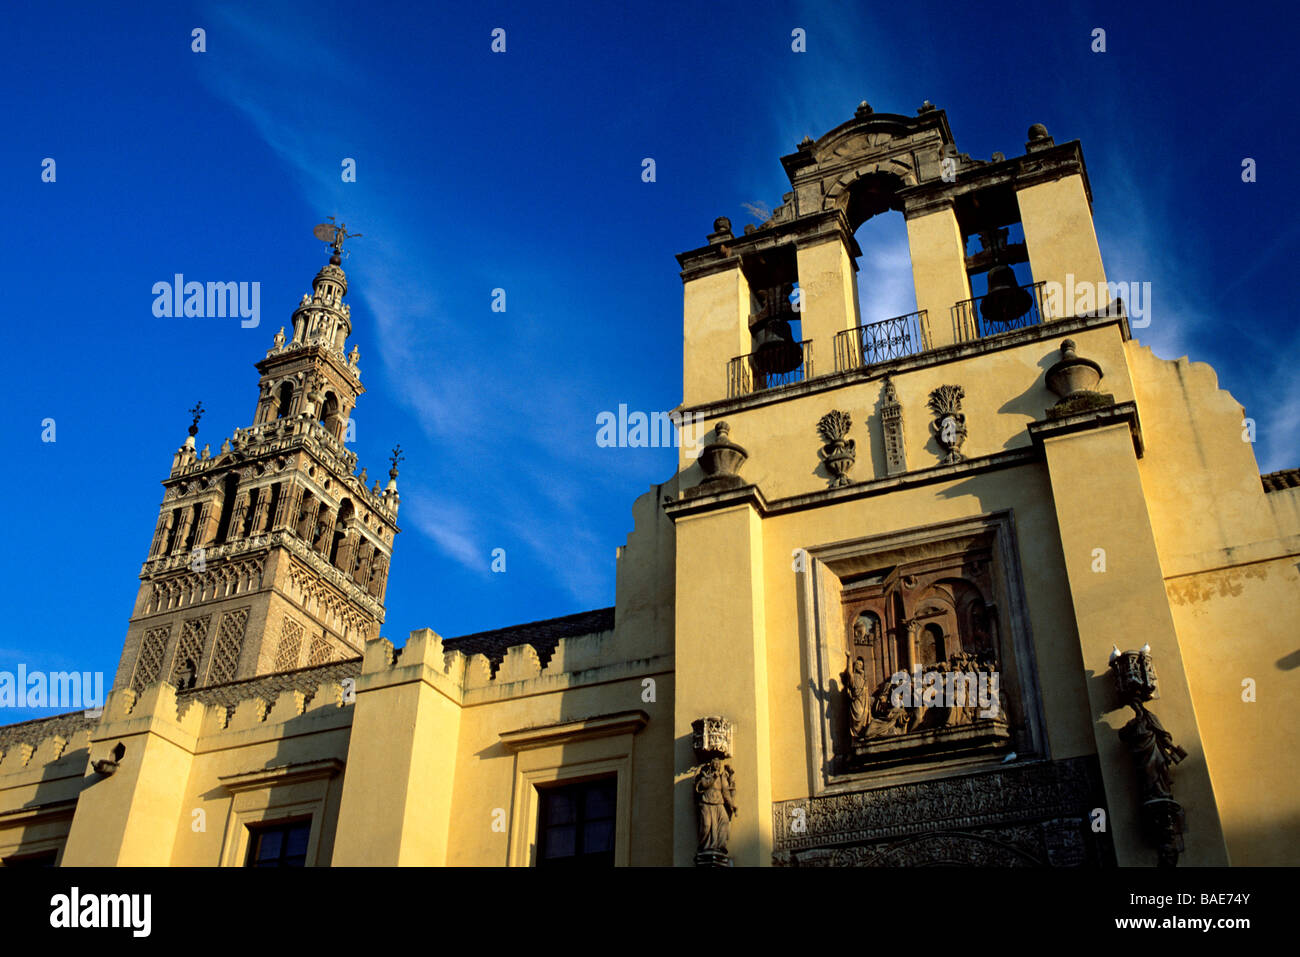 Spagna, Andalusia, Sevilla, la torre Giralda, ex almohade minareto della Grande Moschea trasformata in cattedrale il campanile sormontato Foto Stock